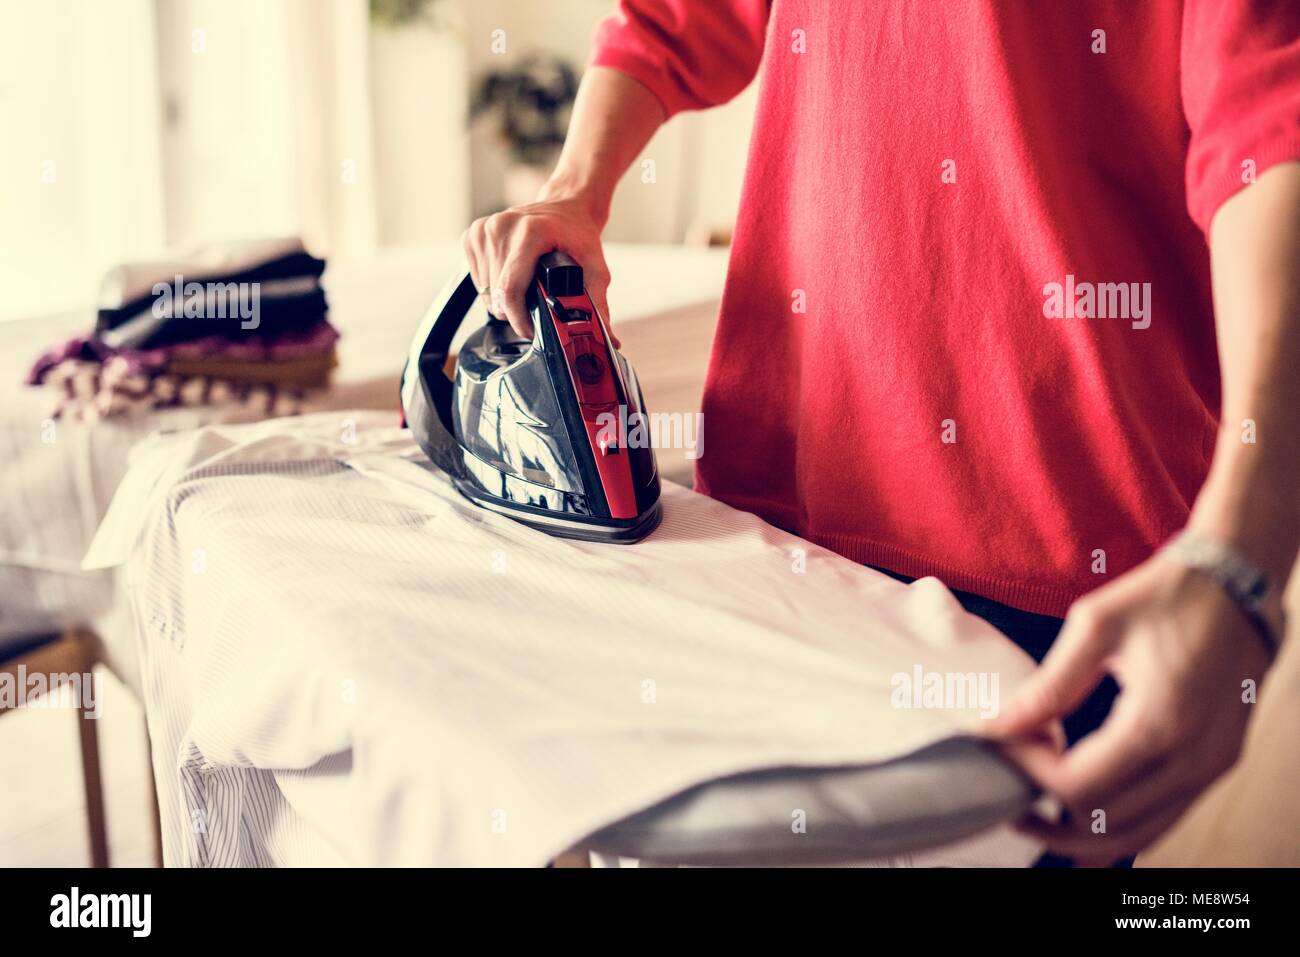 Woman ironing shirt Stock Photo